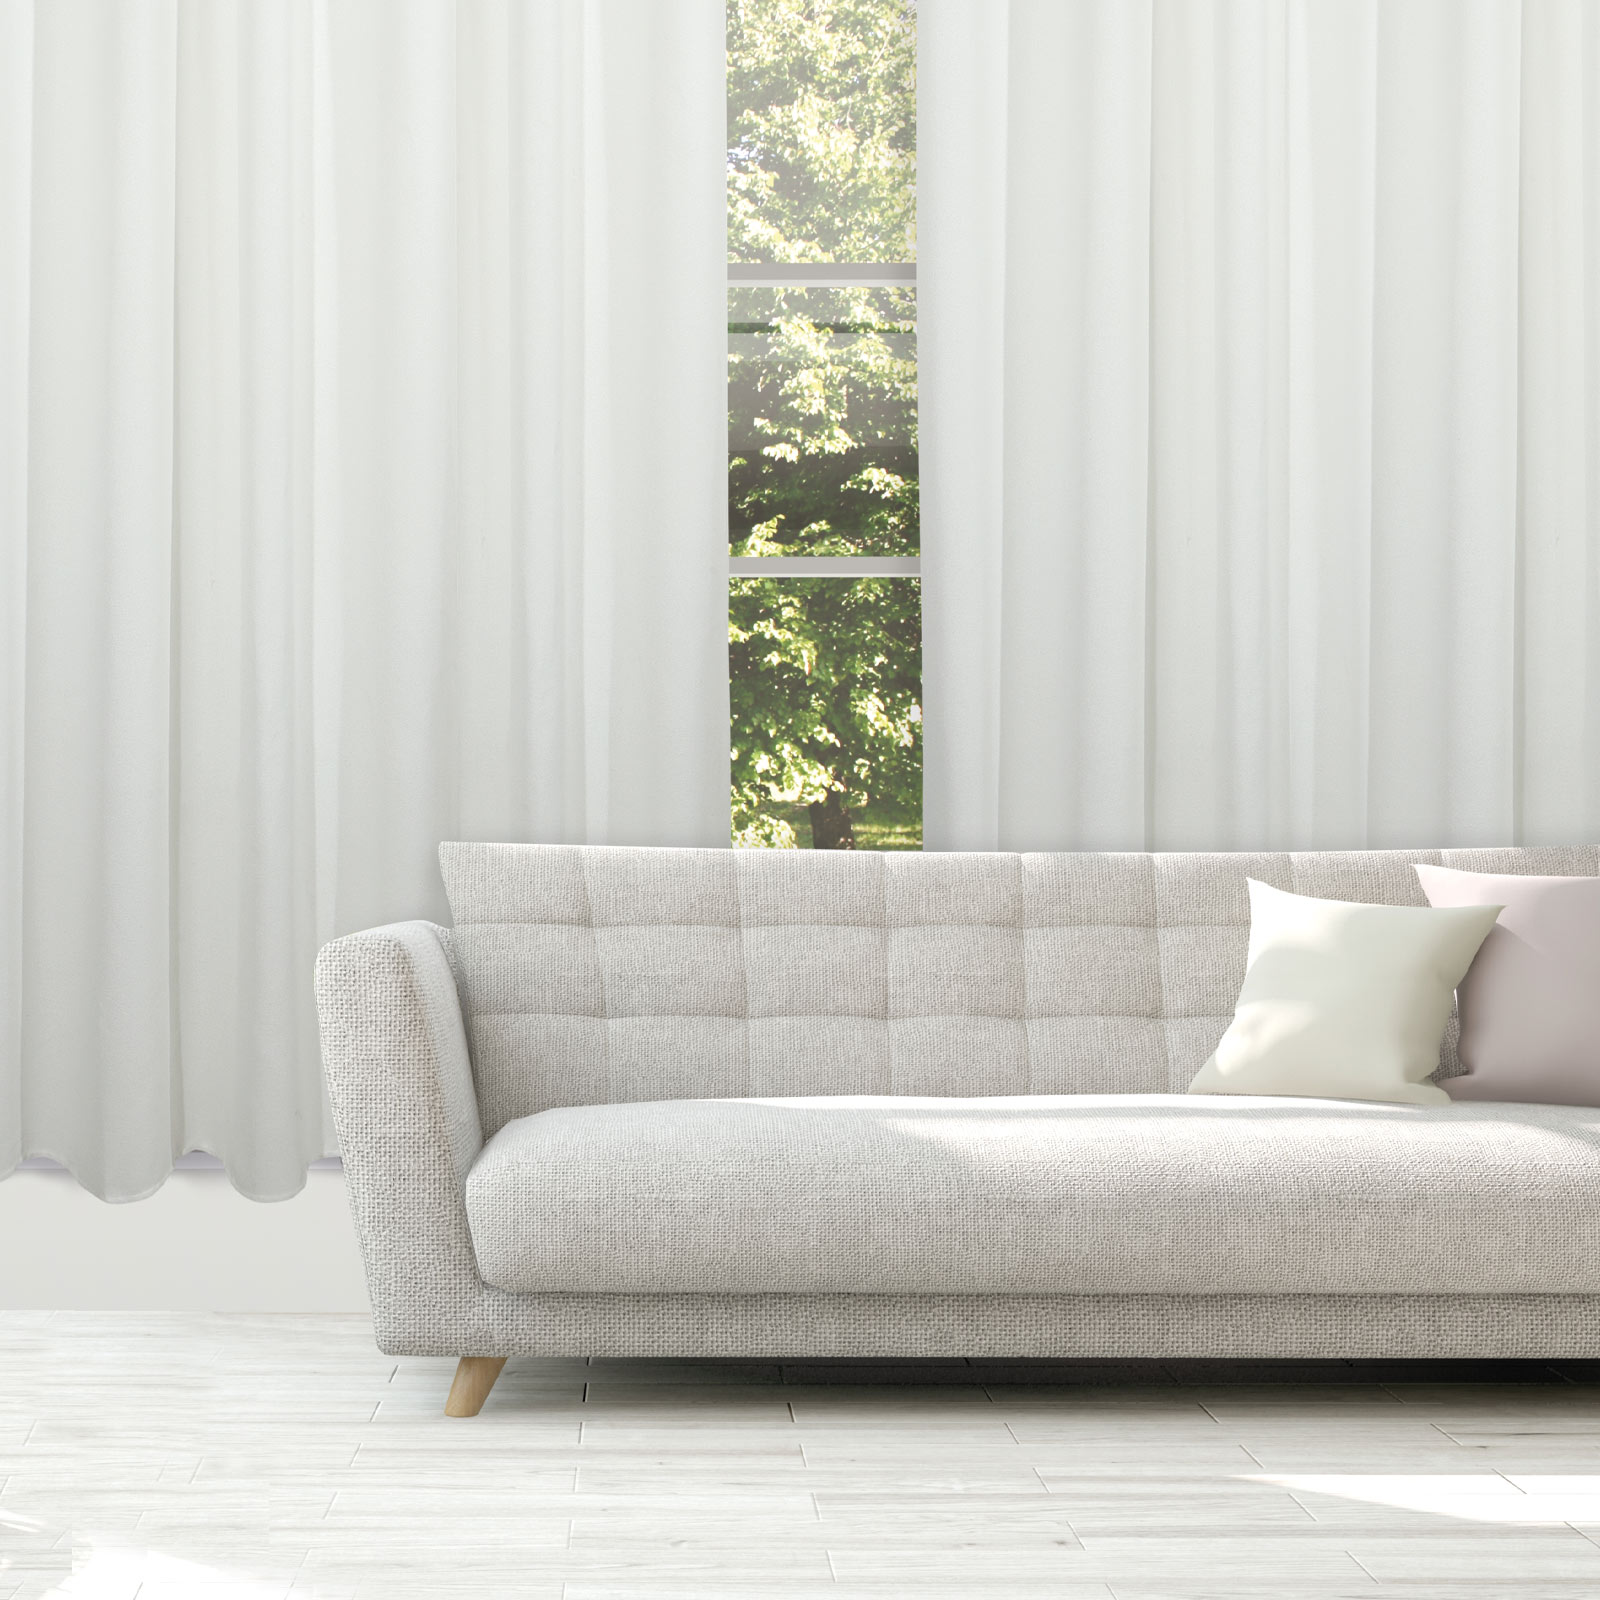 Κουρτίνα Μέτριας Σκίασης Με Τρουκς Polyester 140×270εκ. Curtain Line 2233 Λευκό Das Home (Ύφασμα: Polyester, Χρώμα: Λευκό) – Das Home – 420142702233